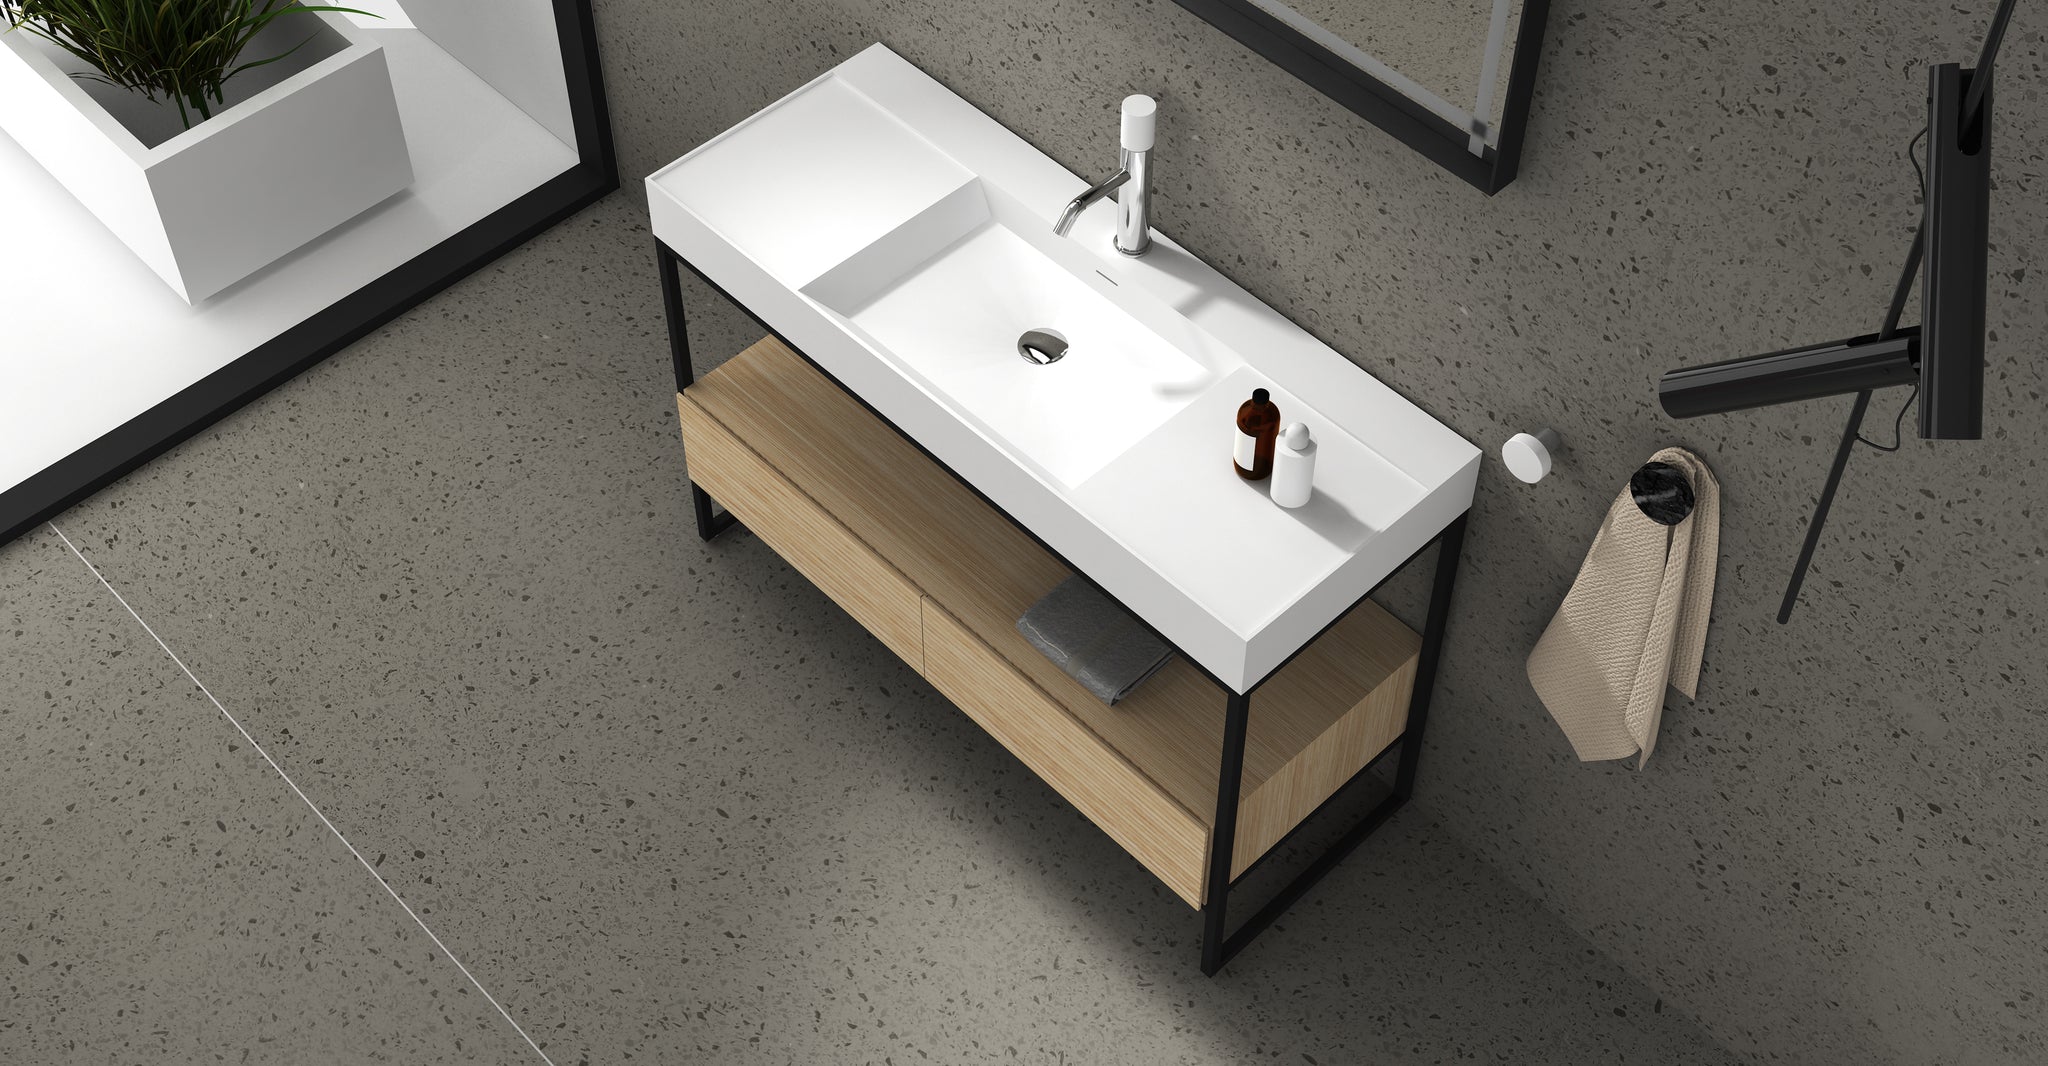 Gia Floorstanding Vanity - Solid Surface Benchtop - 1200mm - G2726-0